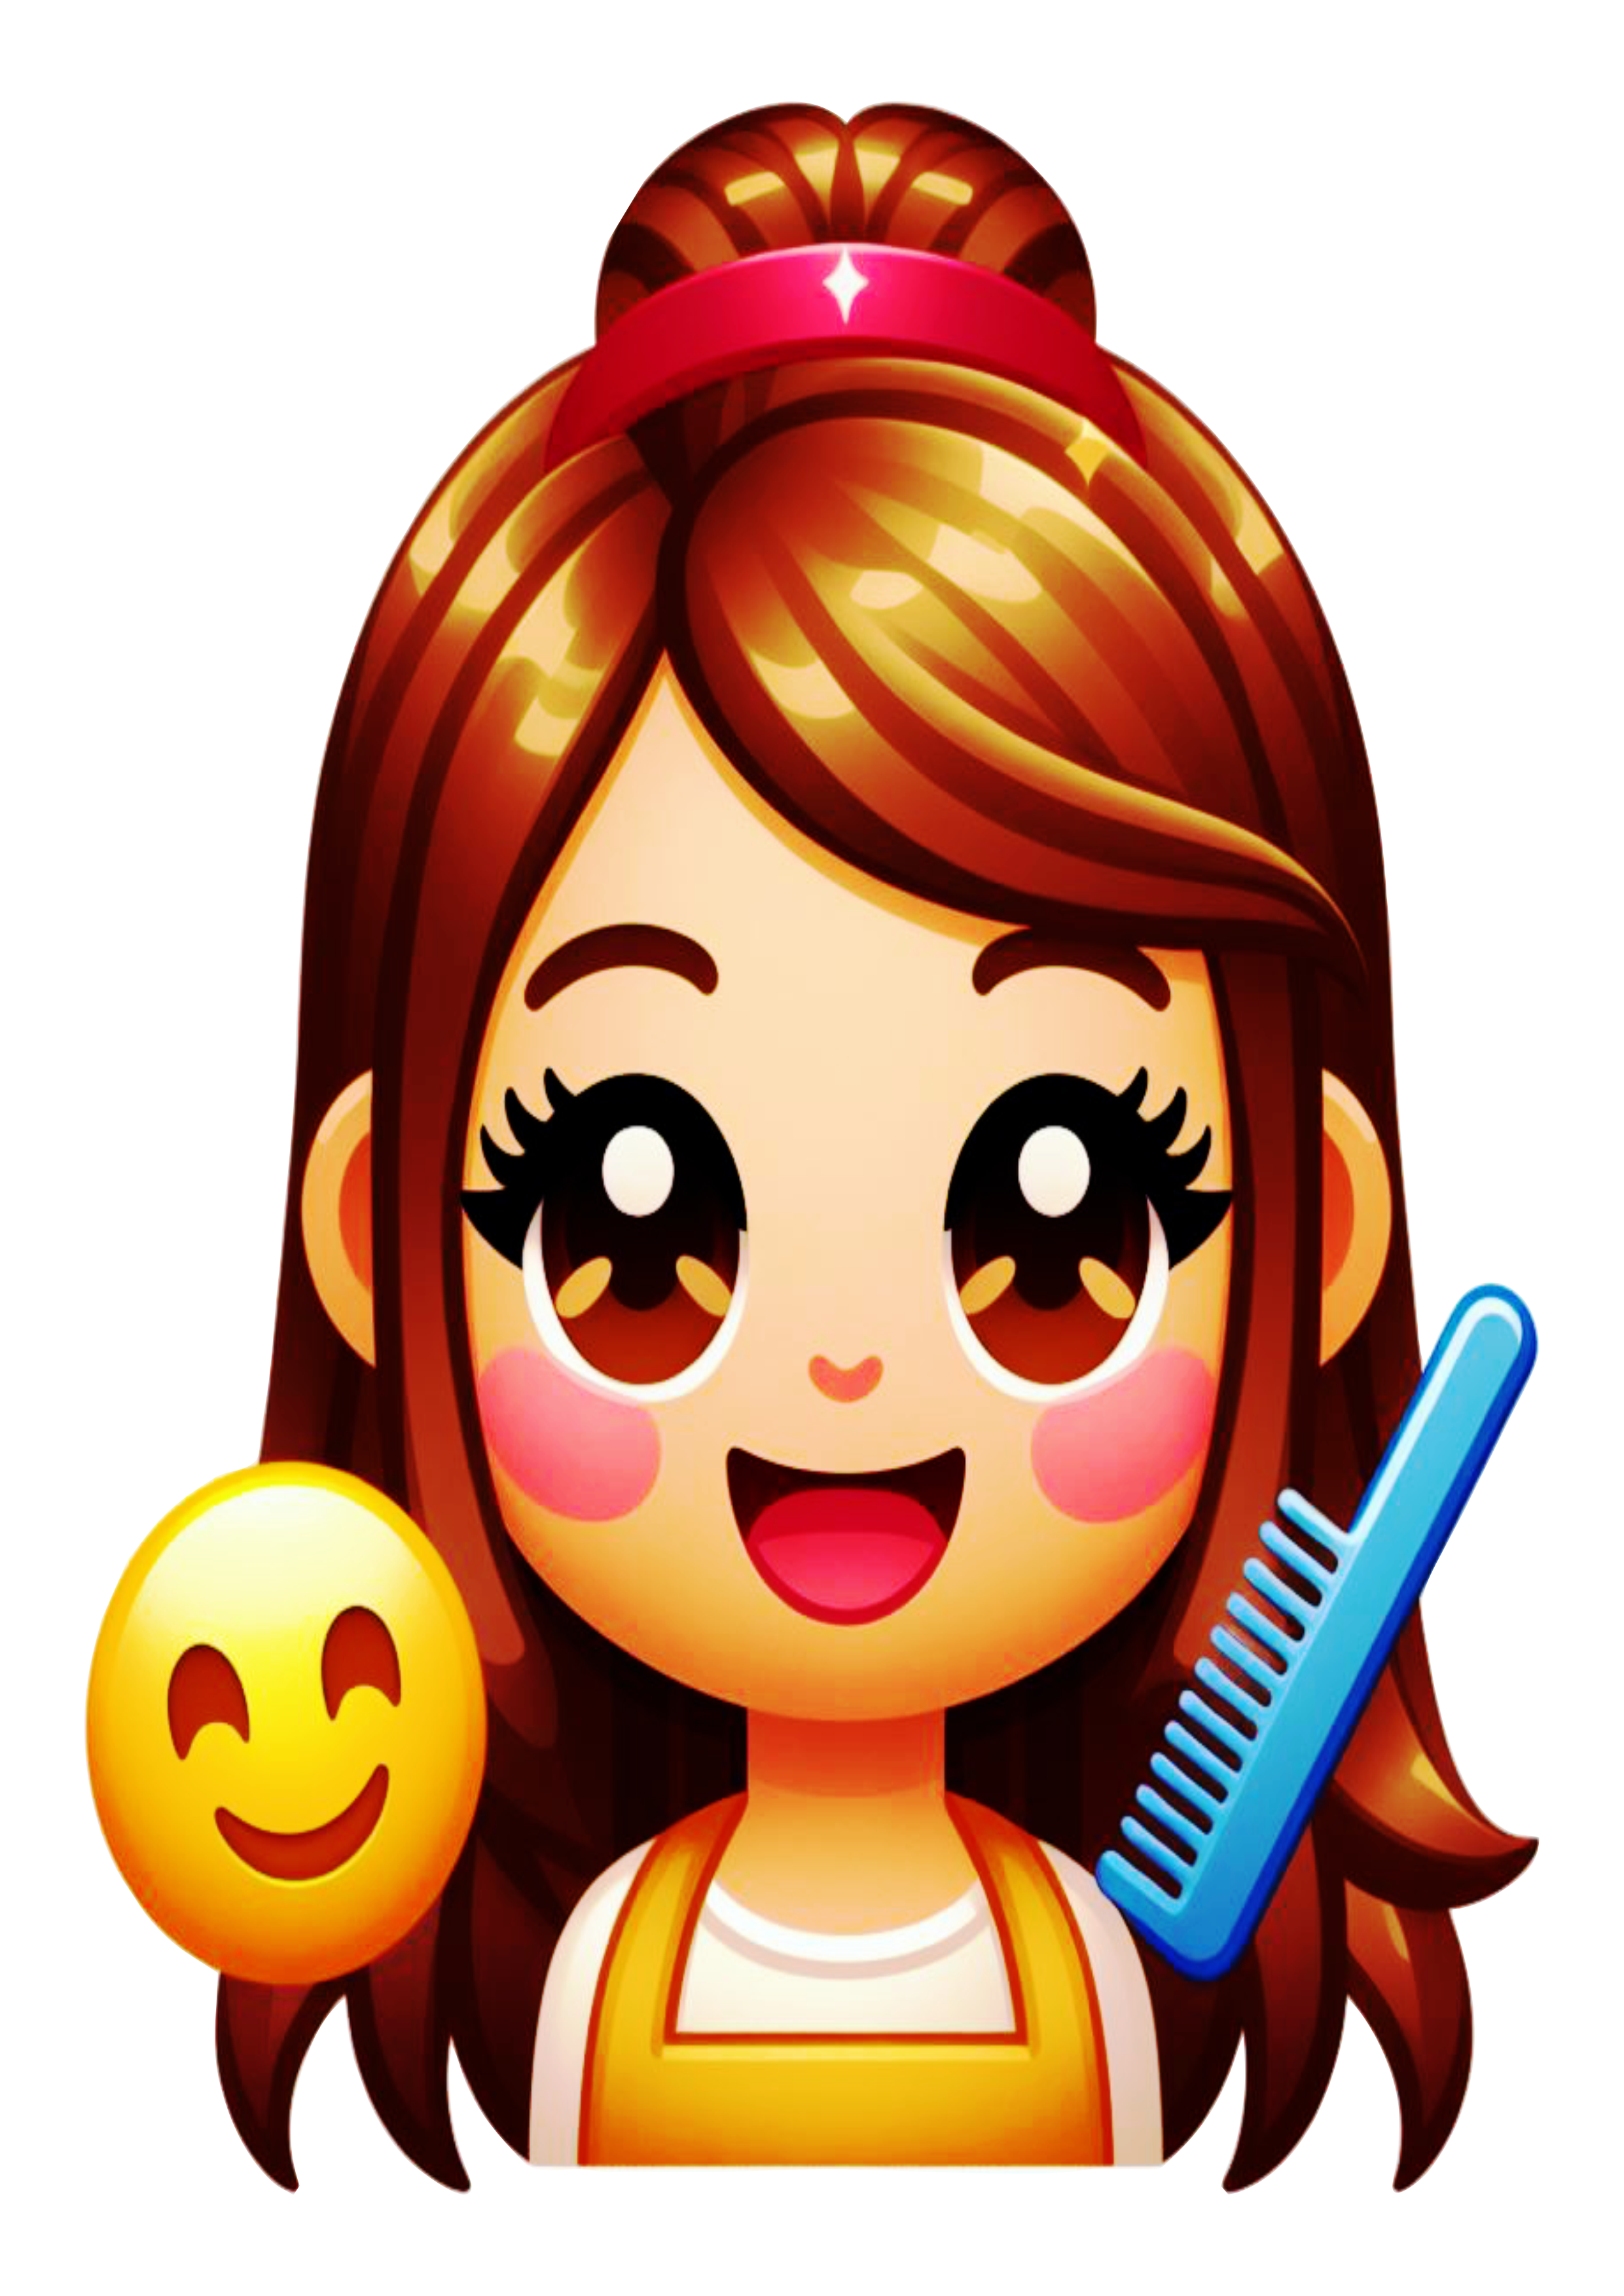 Figurinhas engraçadas cabelereira emojis para whatsapp facebook e instagram artes gráficas free download png fundo transparente vetor